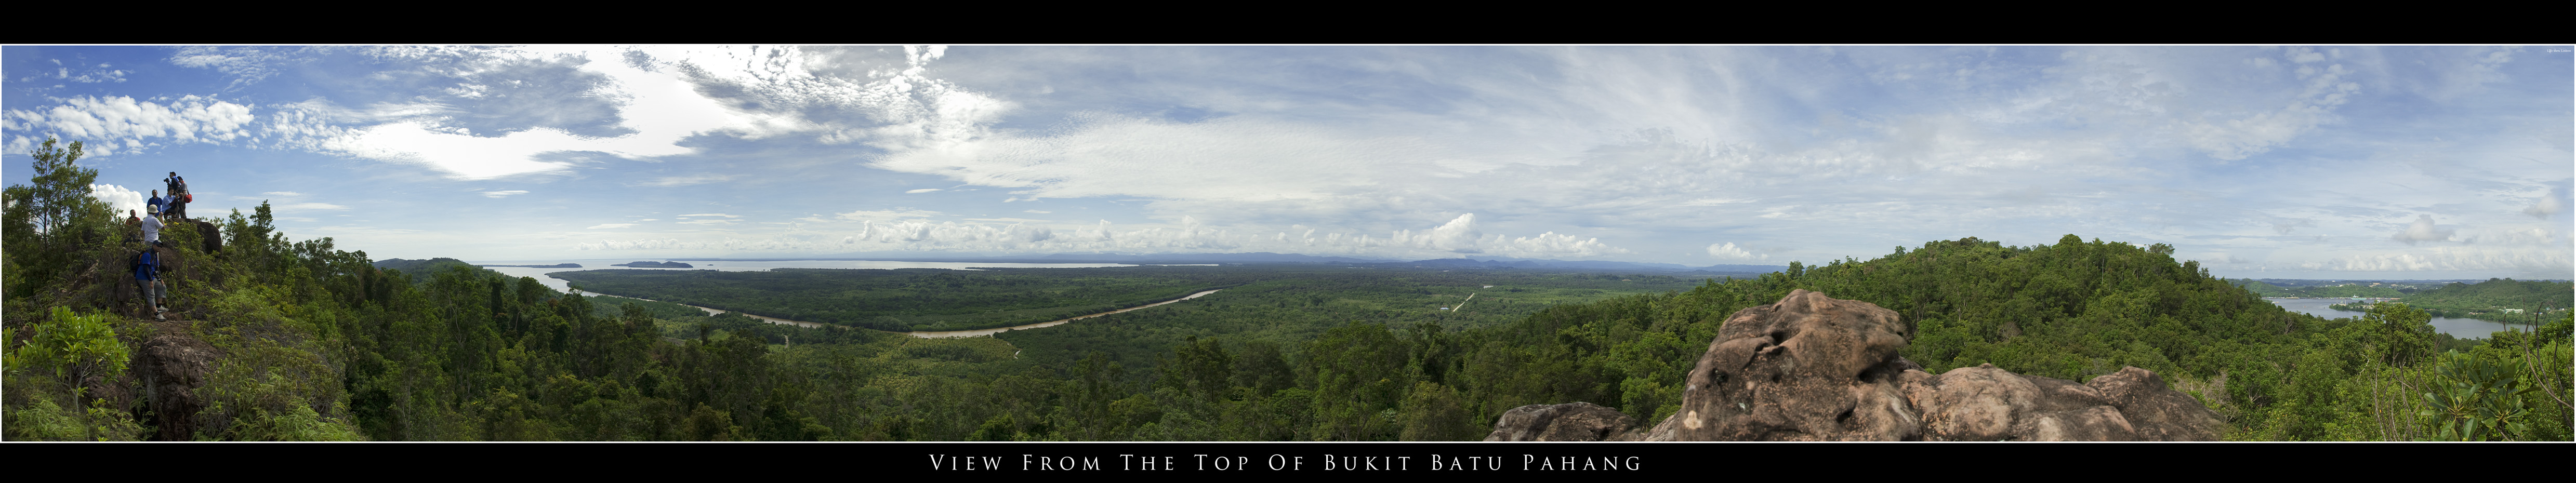 Bukit Batu Pahang Panorama